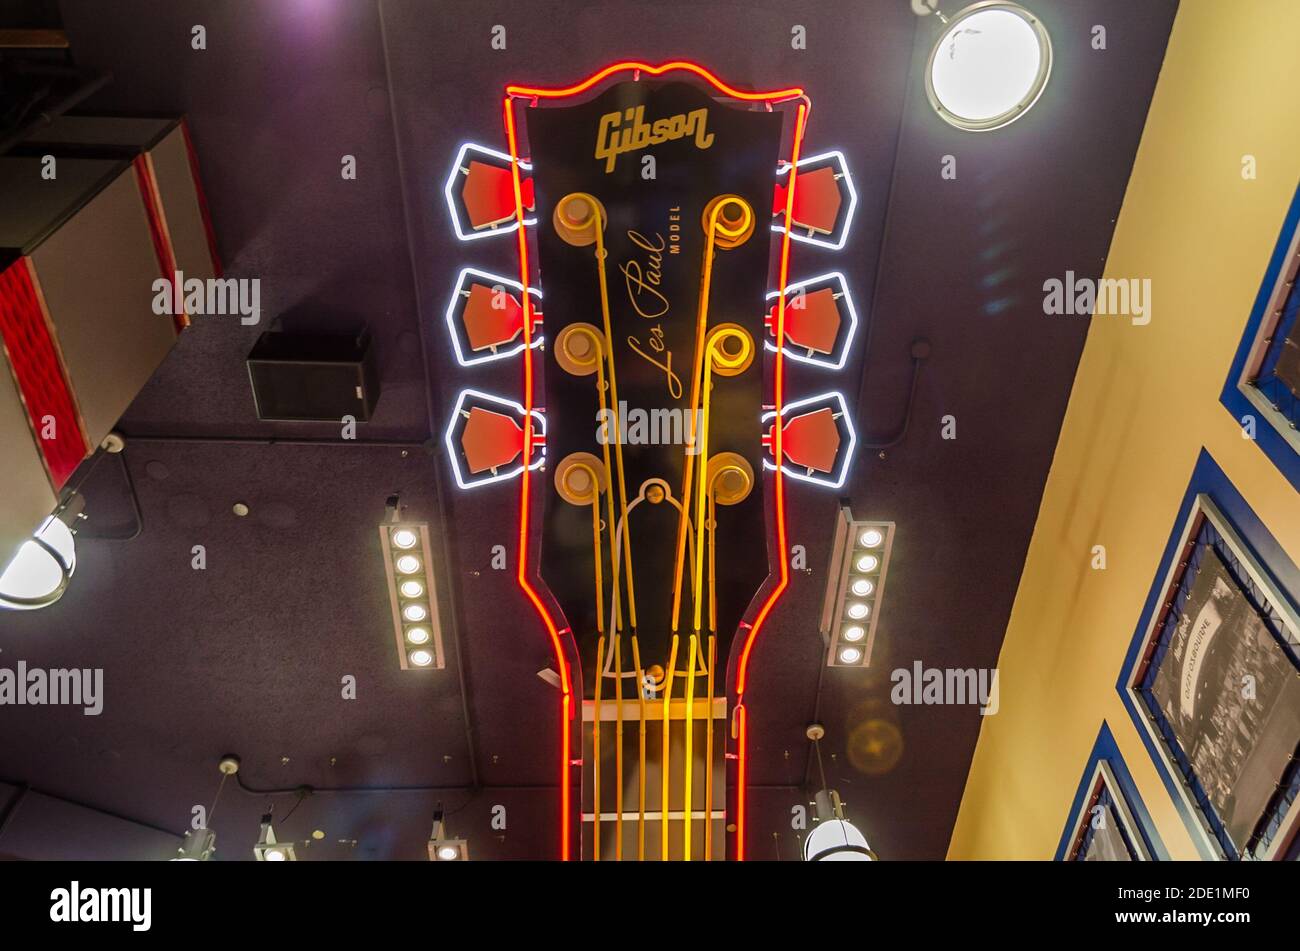 Giant Les Paul Gibson E-Gitarre Kopfteil in Hard Rock Cafe Innendekoration. Beleuchtete Neon Multicolored Lights & hängend von der Decke Stockfoto